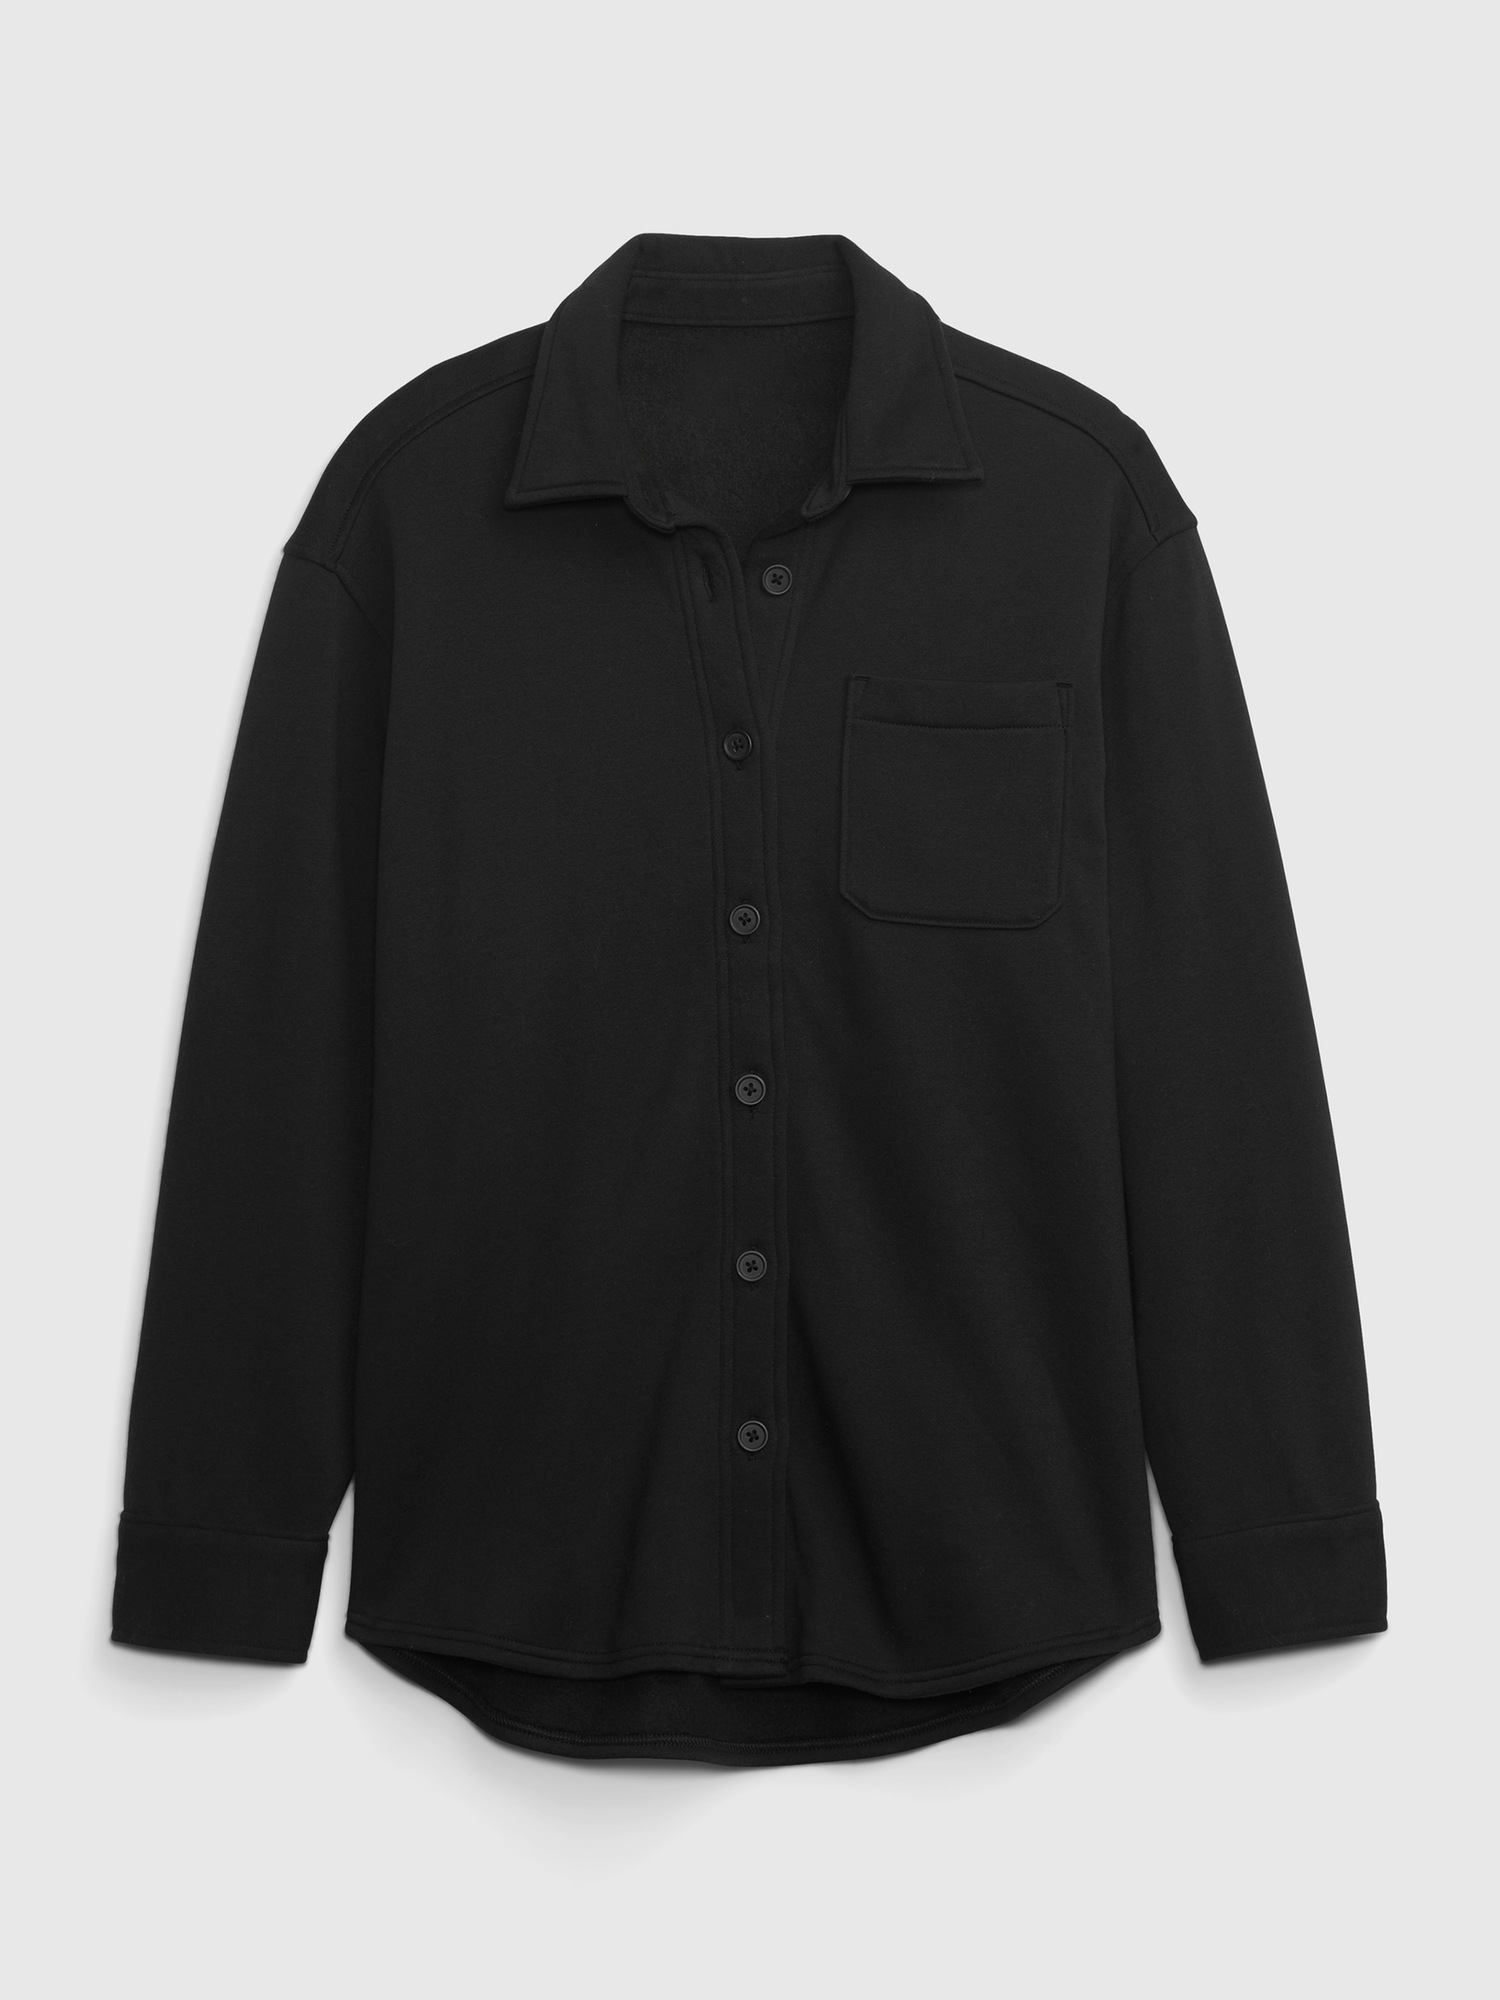 Vintage Soft Oversized Shirt Jacket | Gap